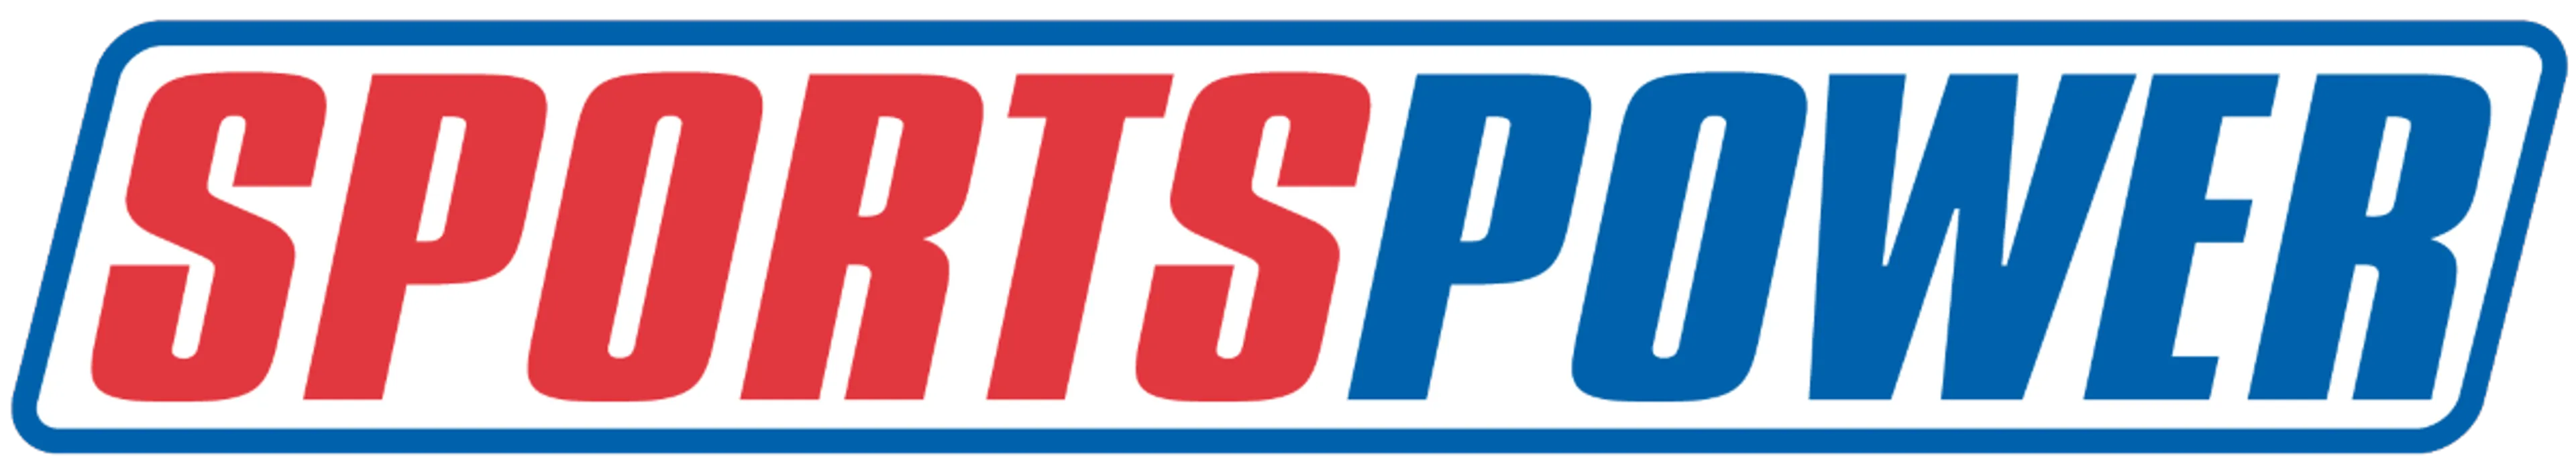 SPORTSPOWER logo